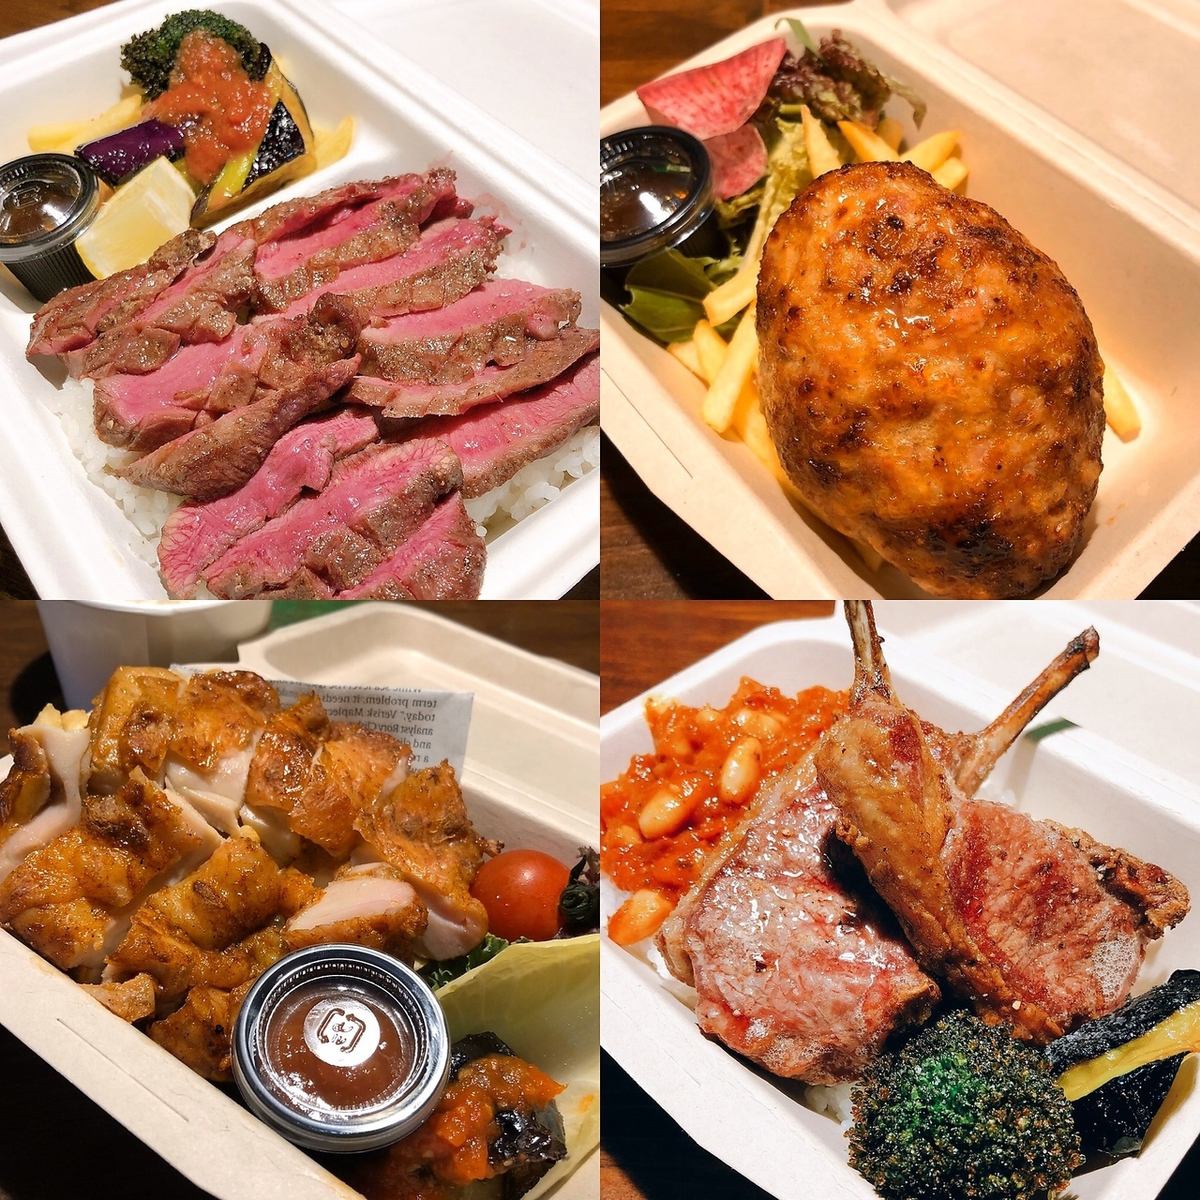 下北沢駅5分♪肉屋直営で様々なお肉料理で話やお酒が進みます!デート、お食事、宴会に